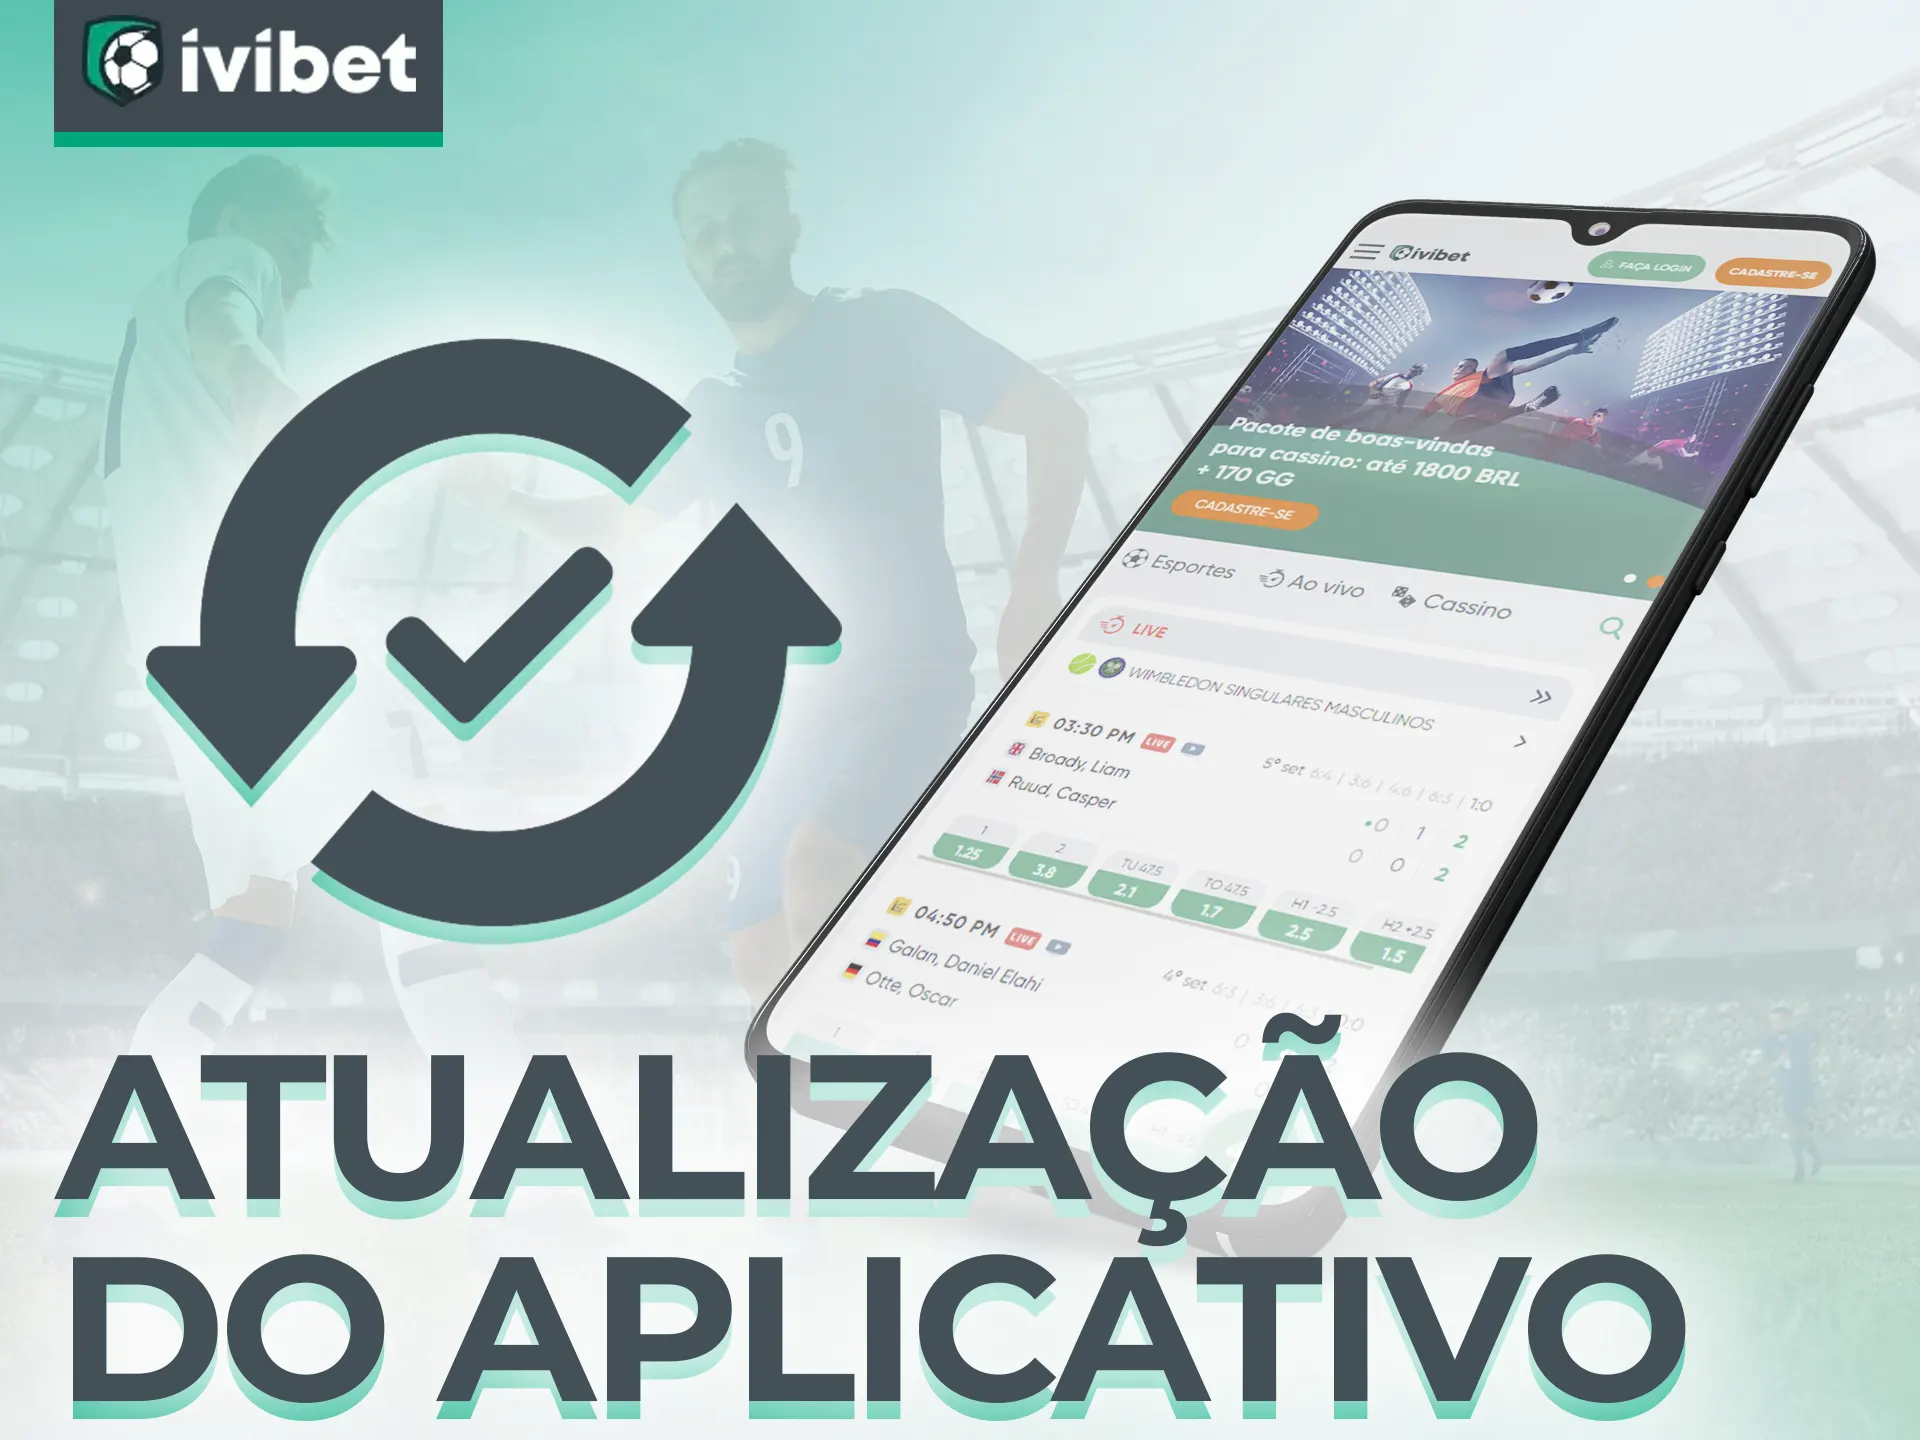 Não se esqueça de atualizar seu aplicativo Ivibet.